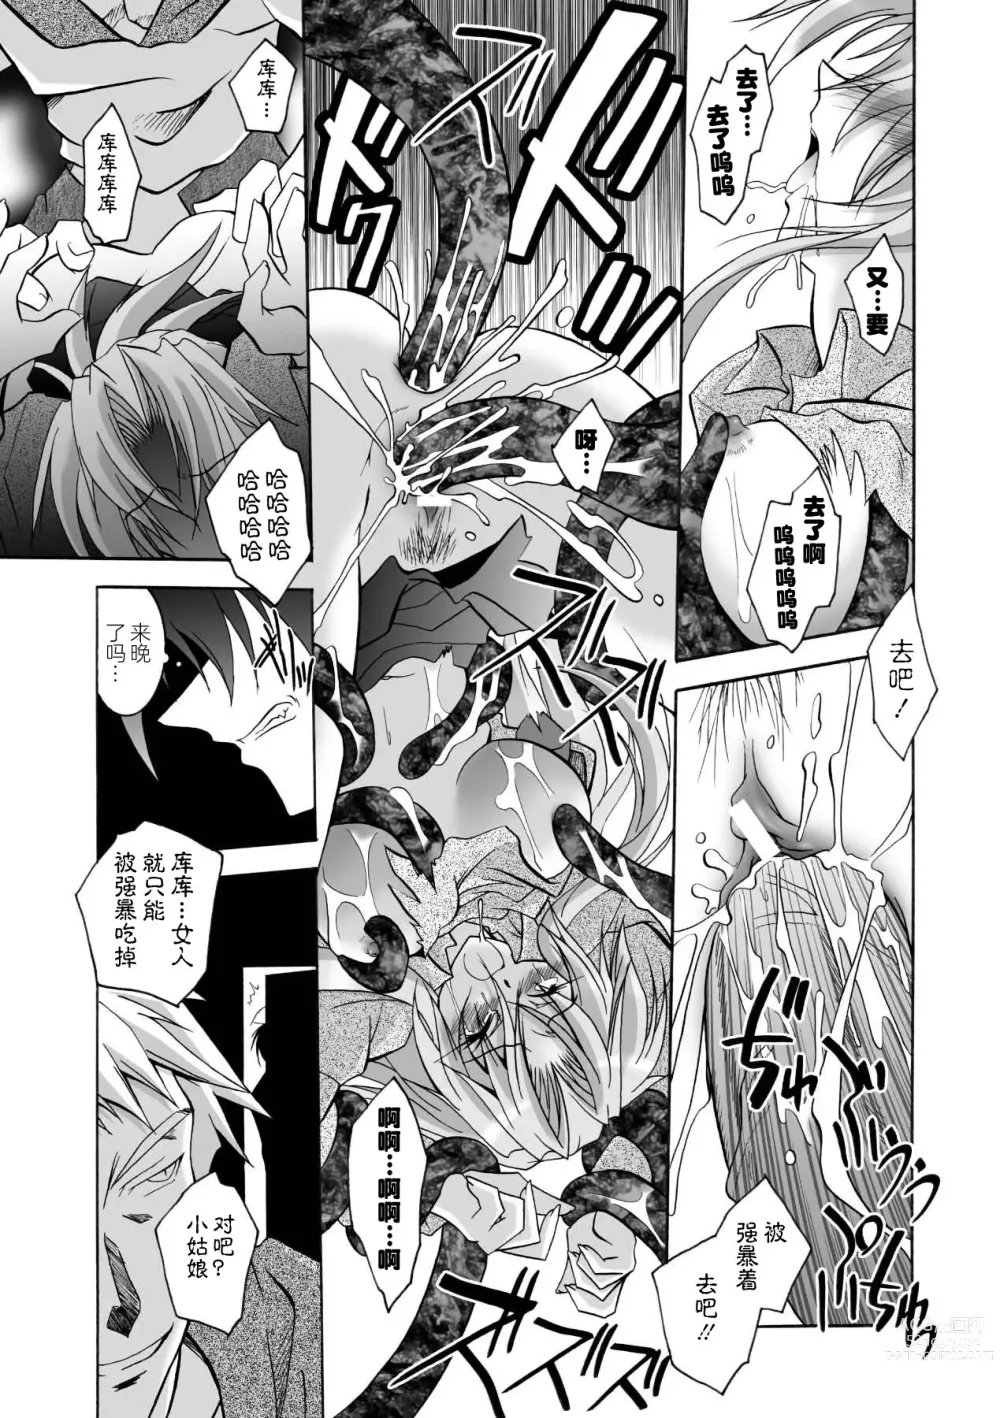 Page 23 of manga Matantei Toudou Shizuka no Inyou Jikenbo